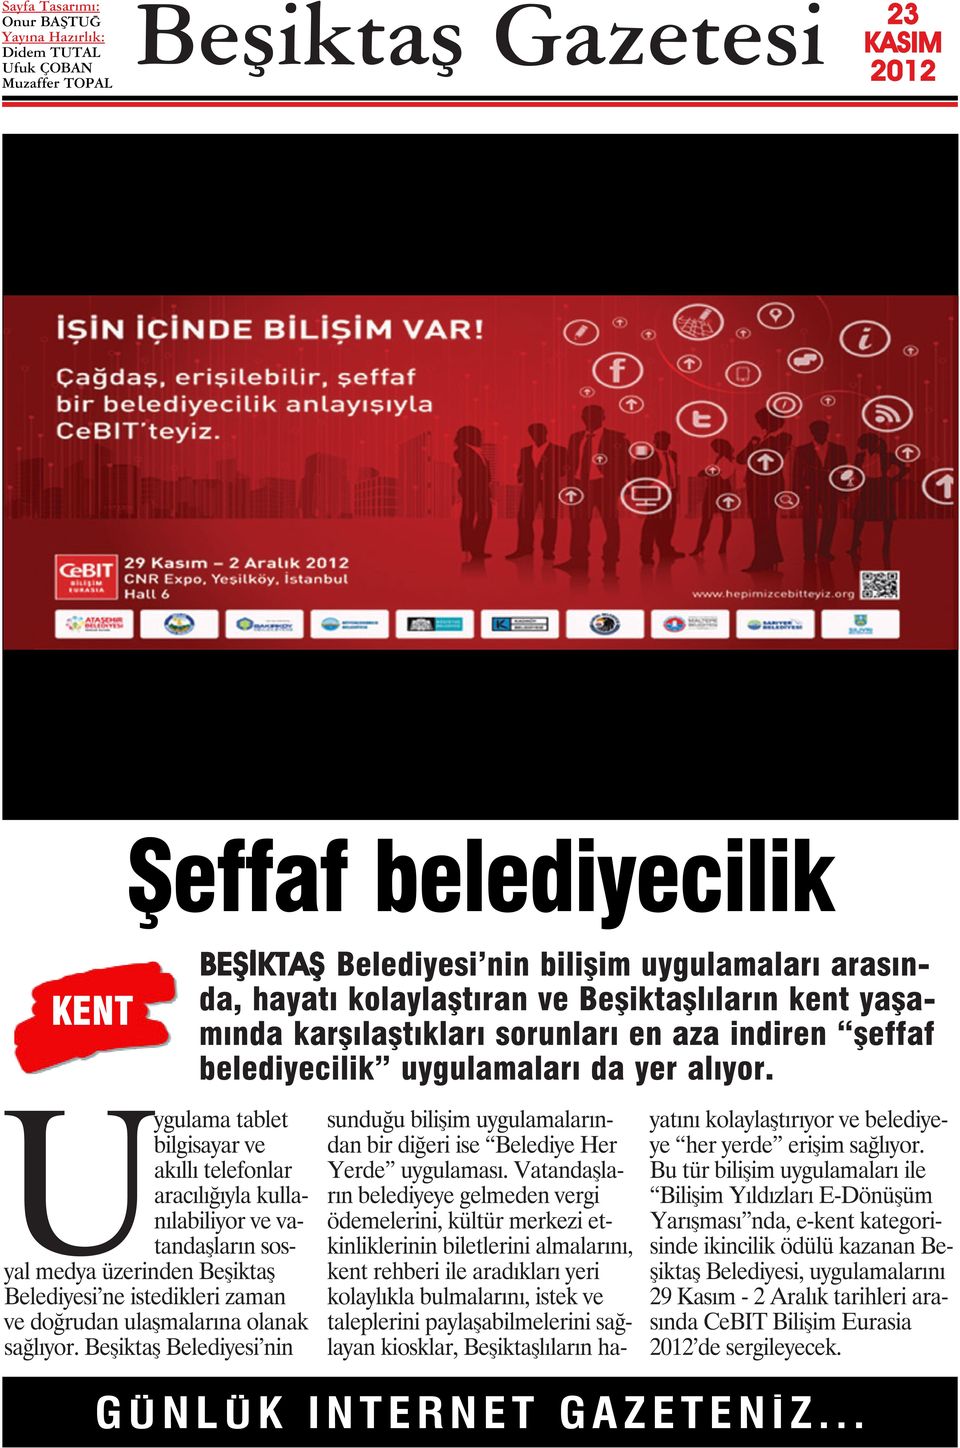 Uygulama tablet bilgisayar ve akıllı telefonlar aracılığıyla kullanılabiliyor ve vatandaşların sosyal medya üzerinden Beşiktaş Belediyesi ne istedikleri zaman ve doğrudan ulaşmalarına olanak sağlıyor.